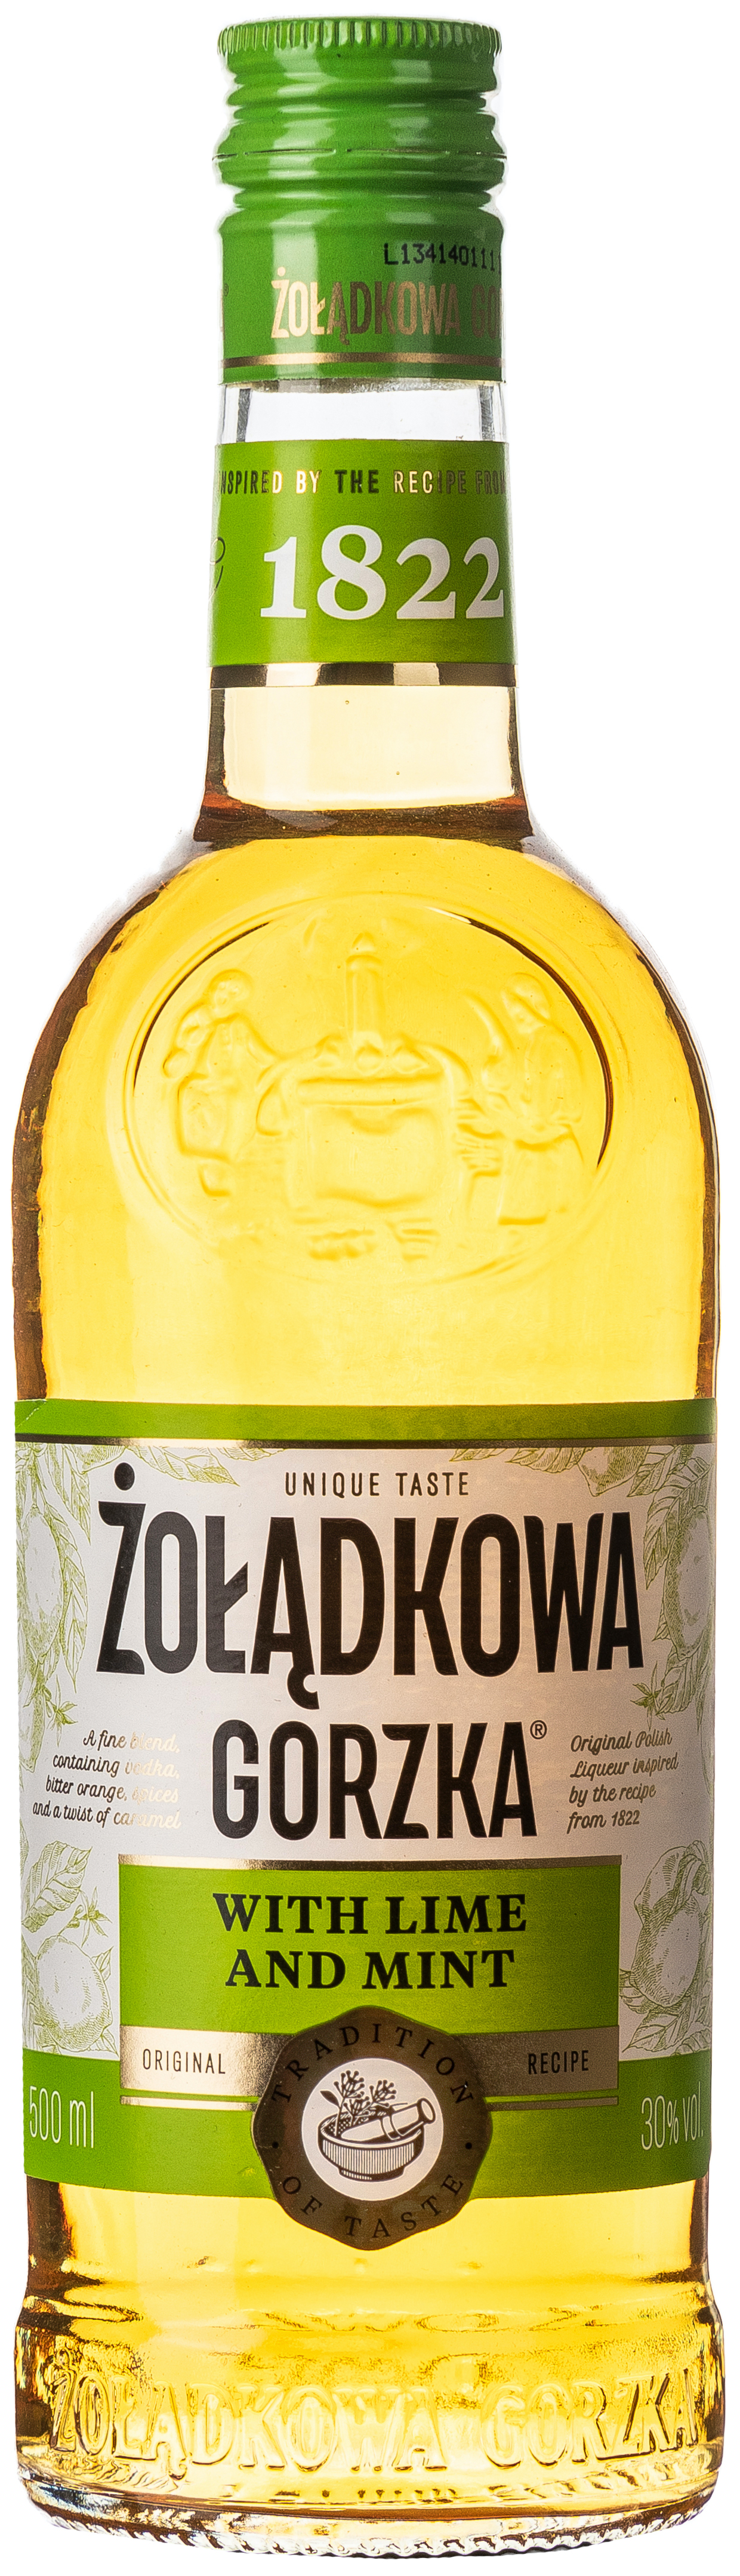 Zoladkowa Gorzka Limone und Minze 30% vol. 0,5L